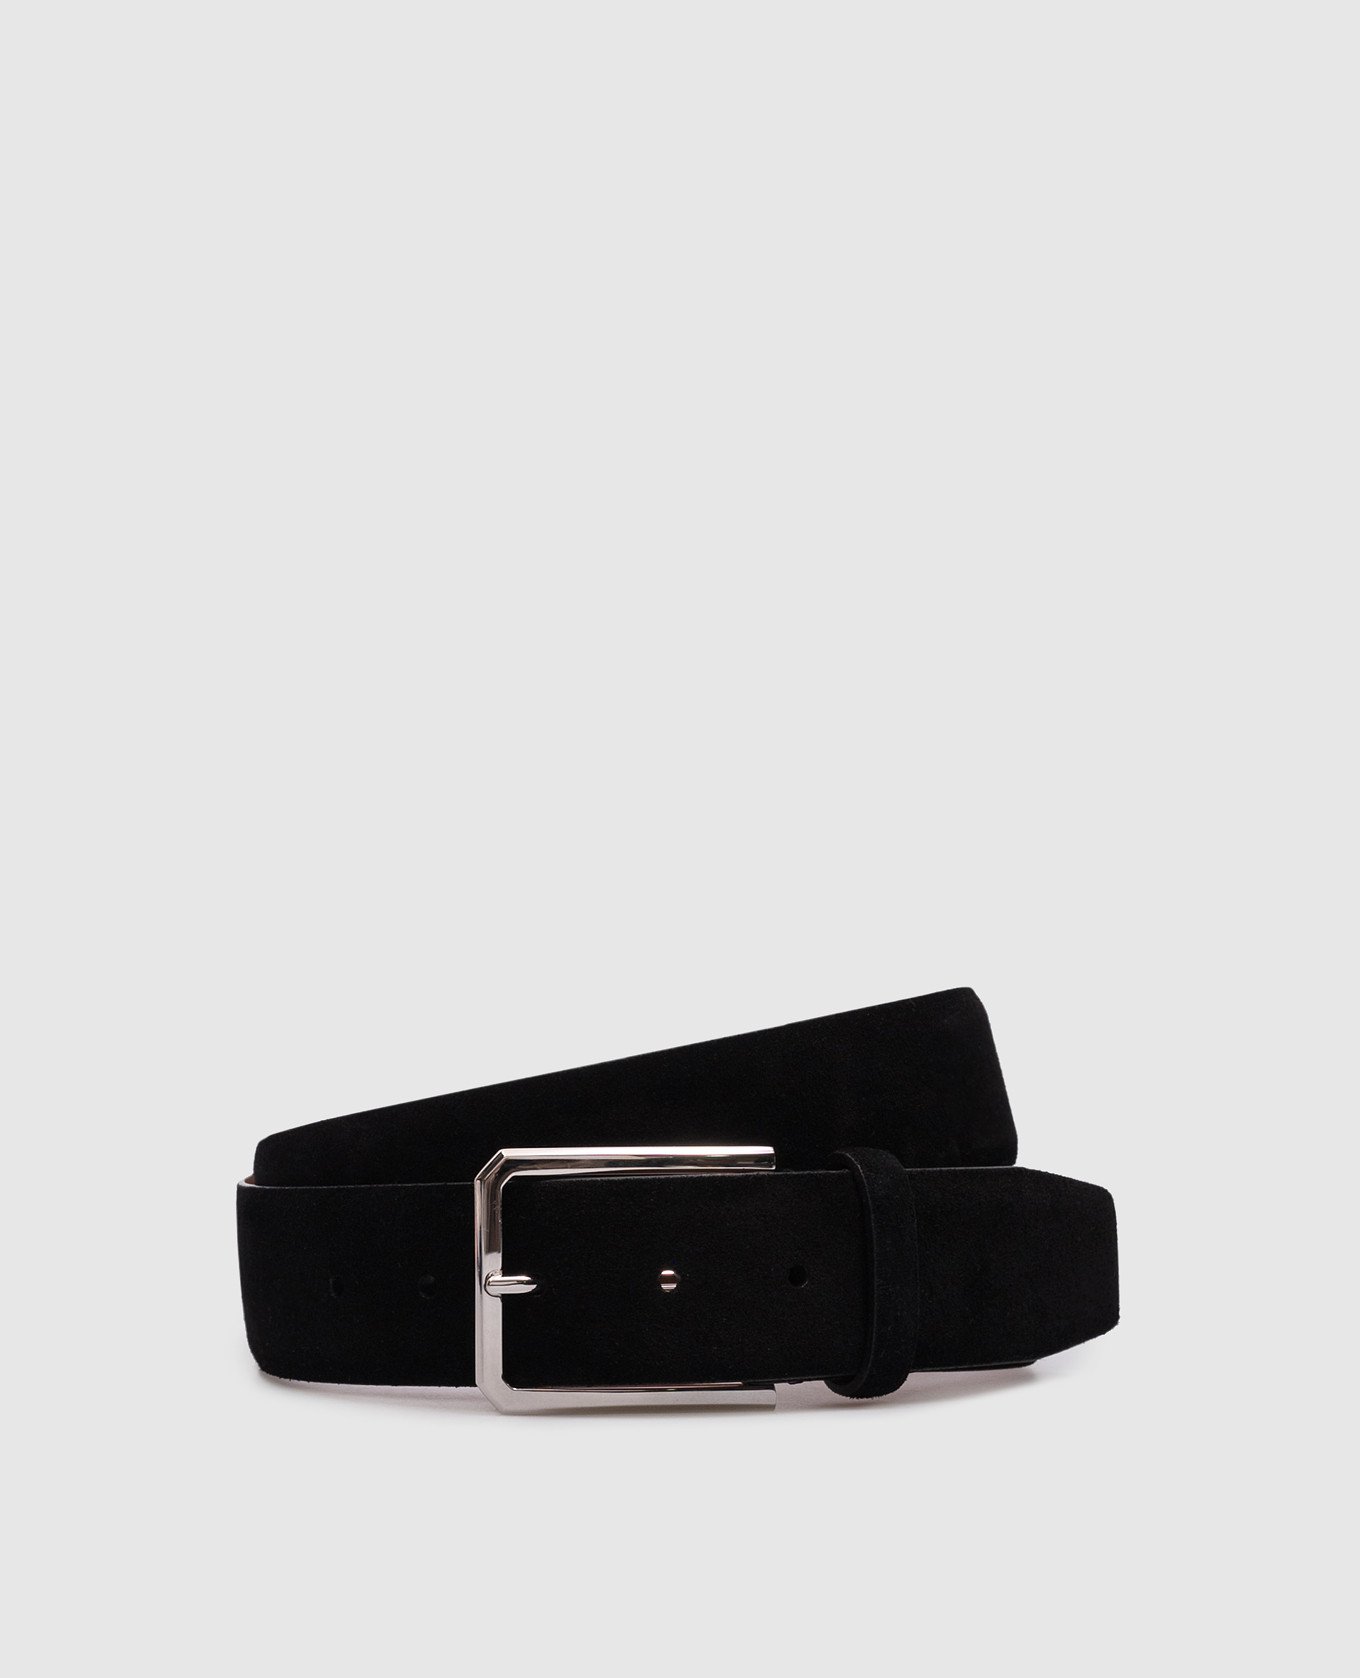 Black suede belt with logo